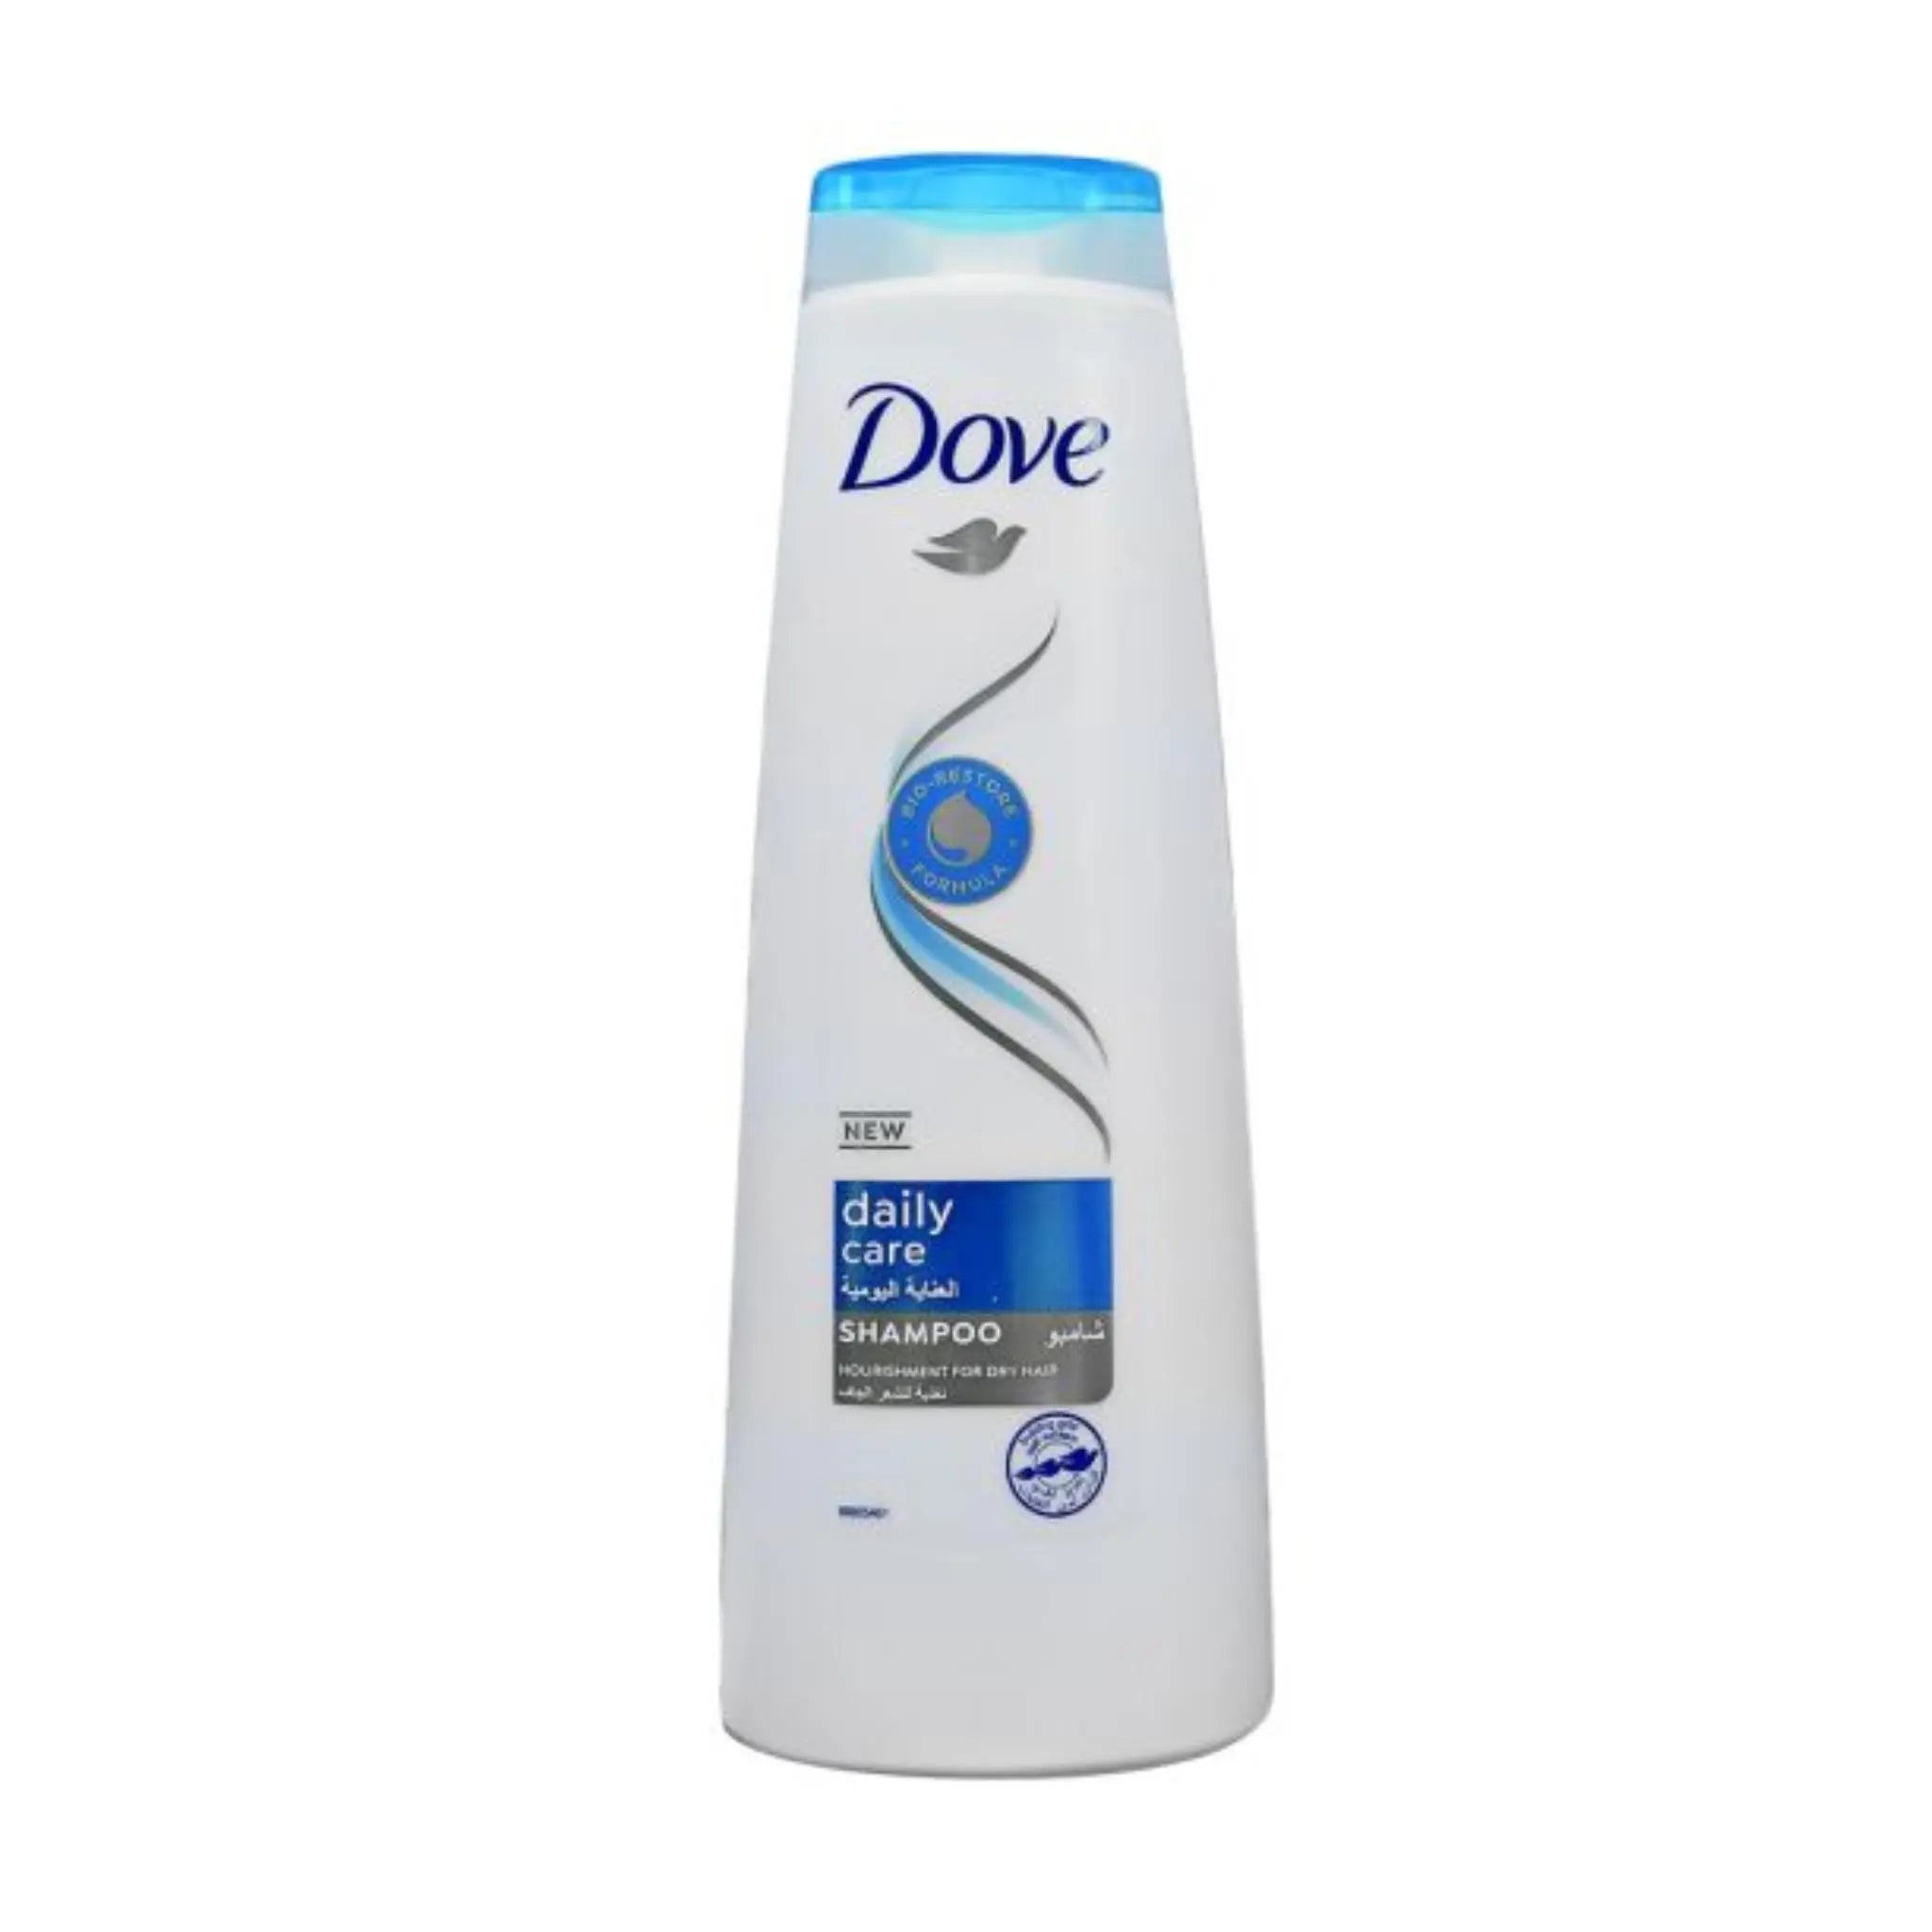 Dove Shampoo Daily Care 400ML - 2x6 sets (1 carton) Marino.AE